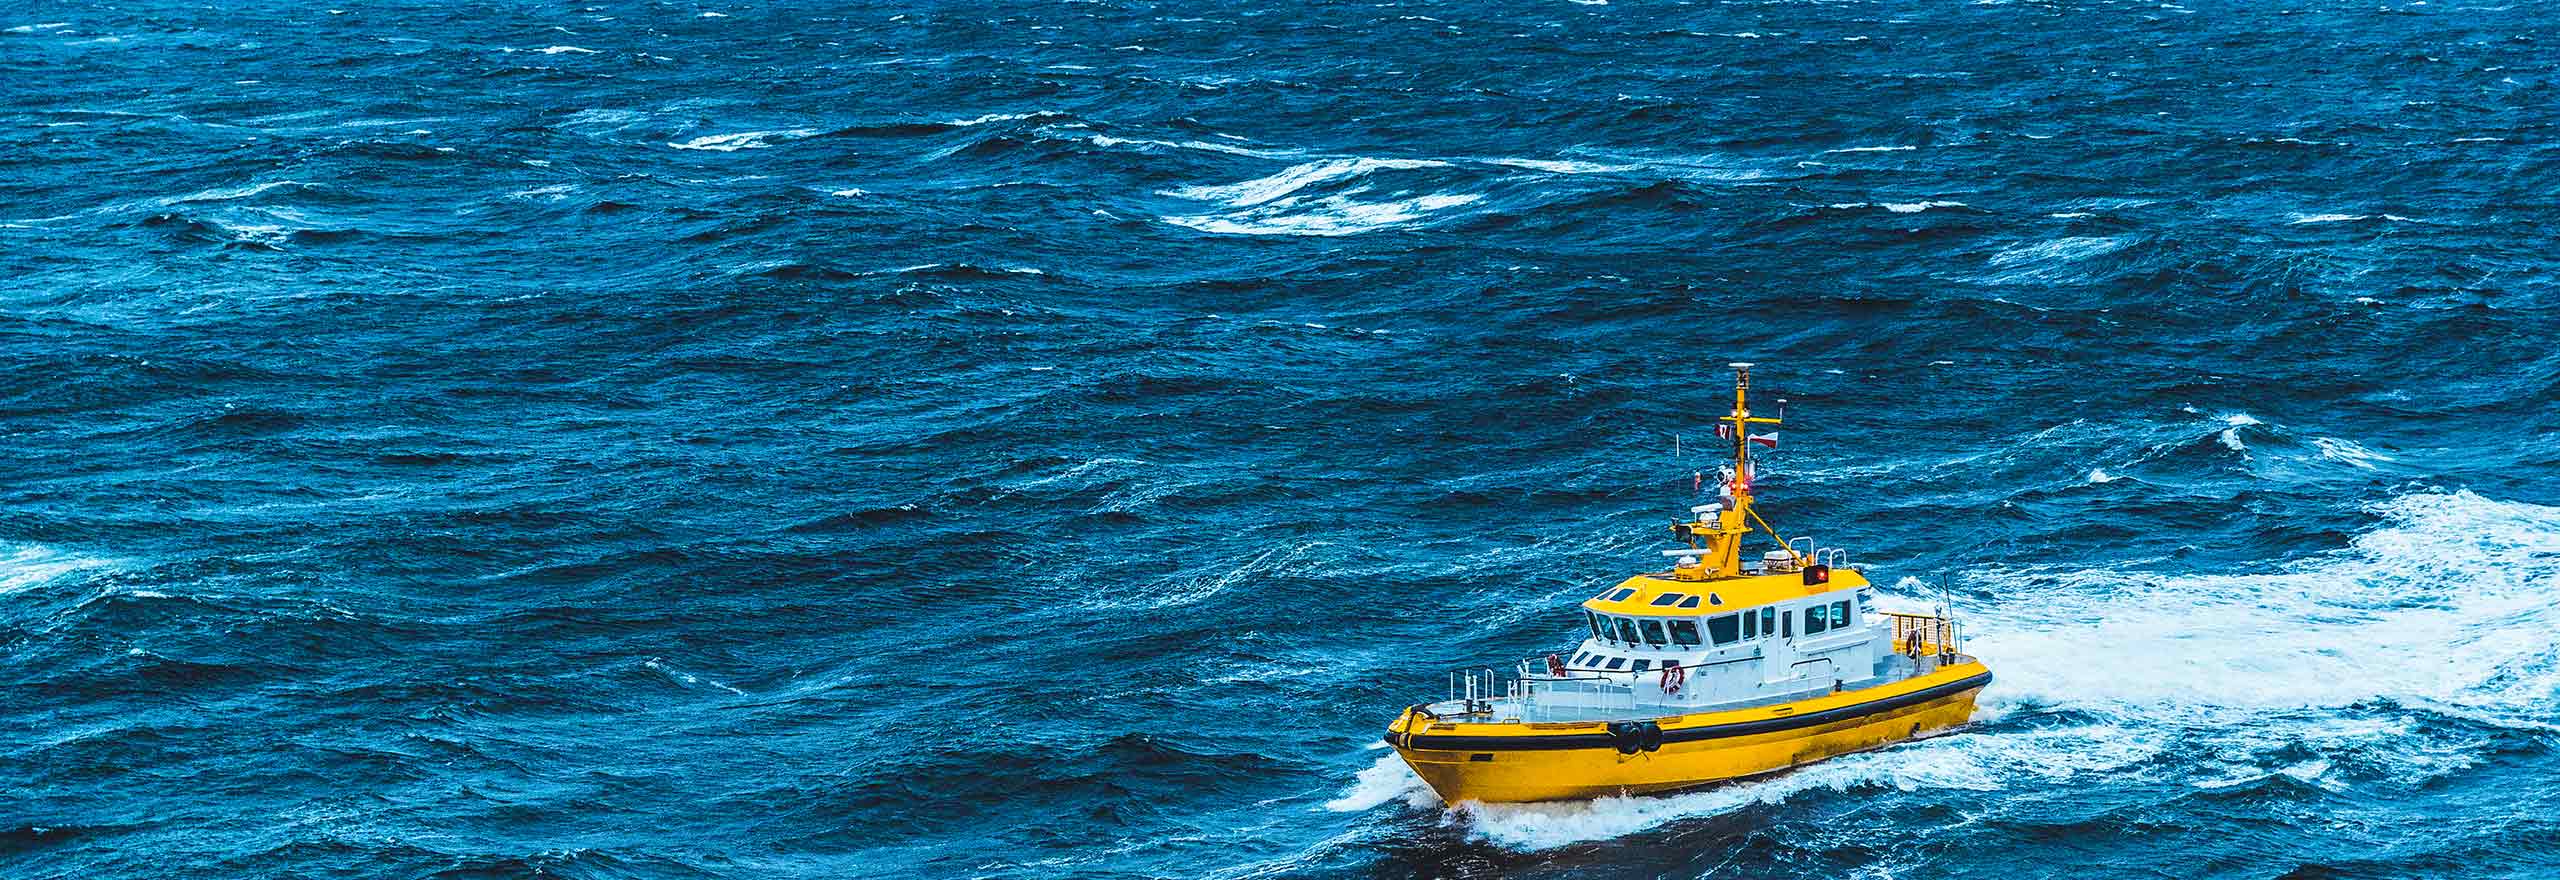 Un buque amarillo de protección costera en alta mar en un mar agitado y con tormentas.